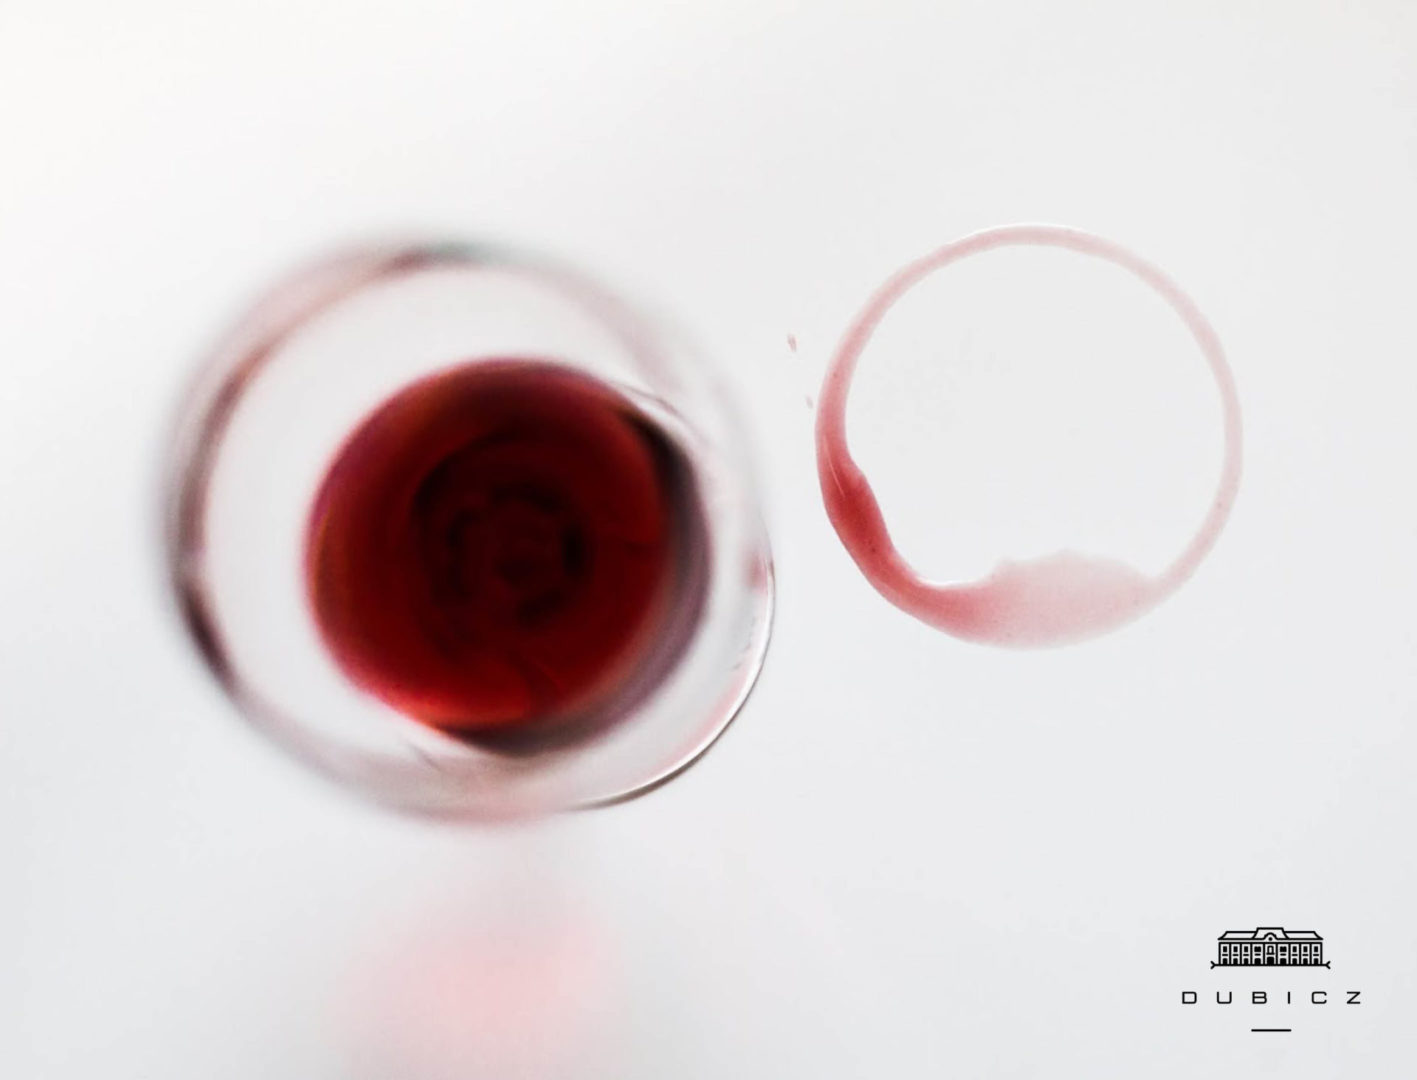 Hogyan tüntessük el a vörösbor okozta foltot?